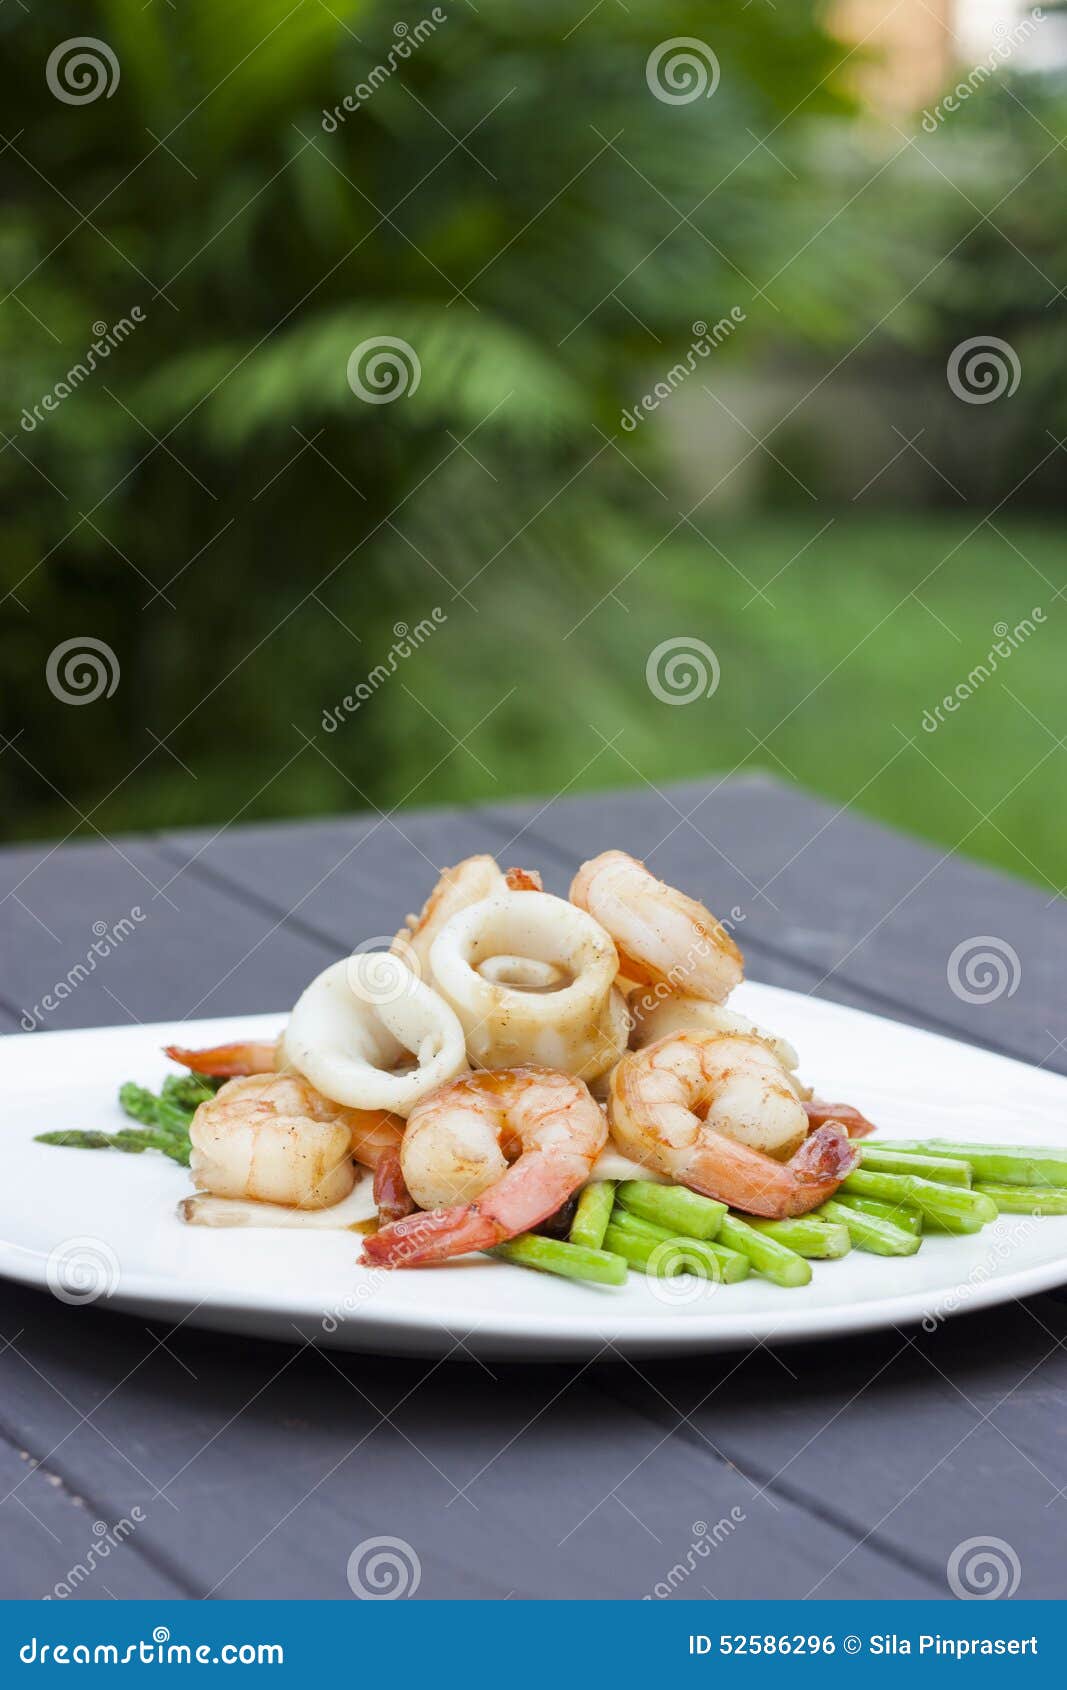 Squid & shrimp stock photo. Image of shrimp, squid - 52586296